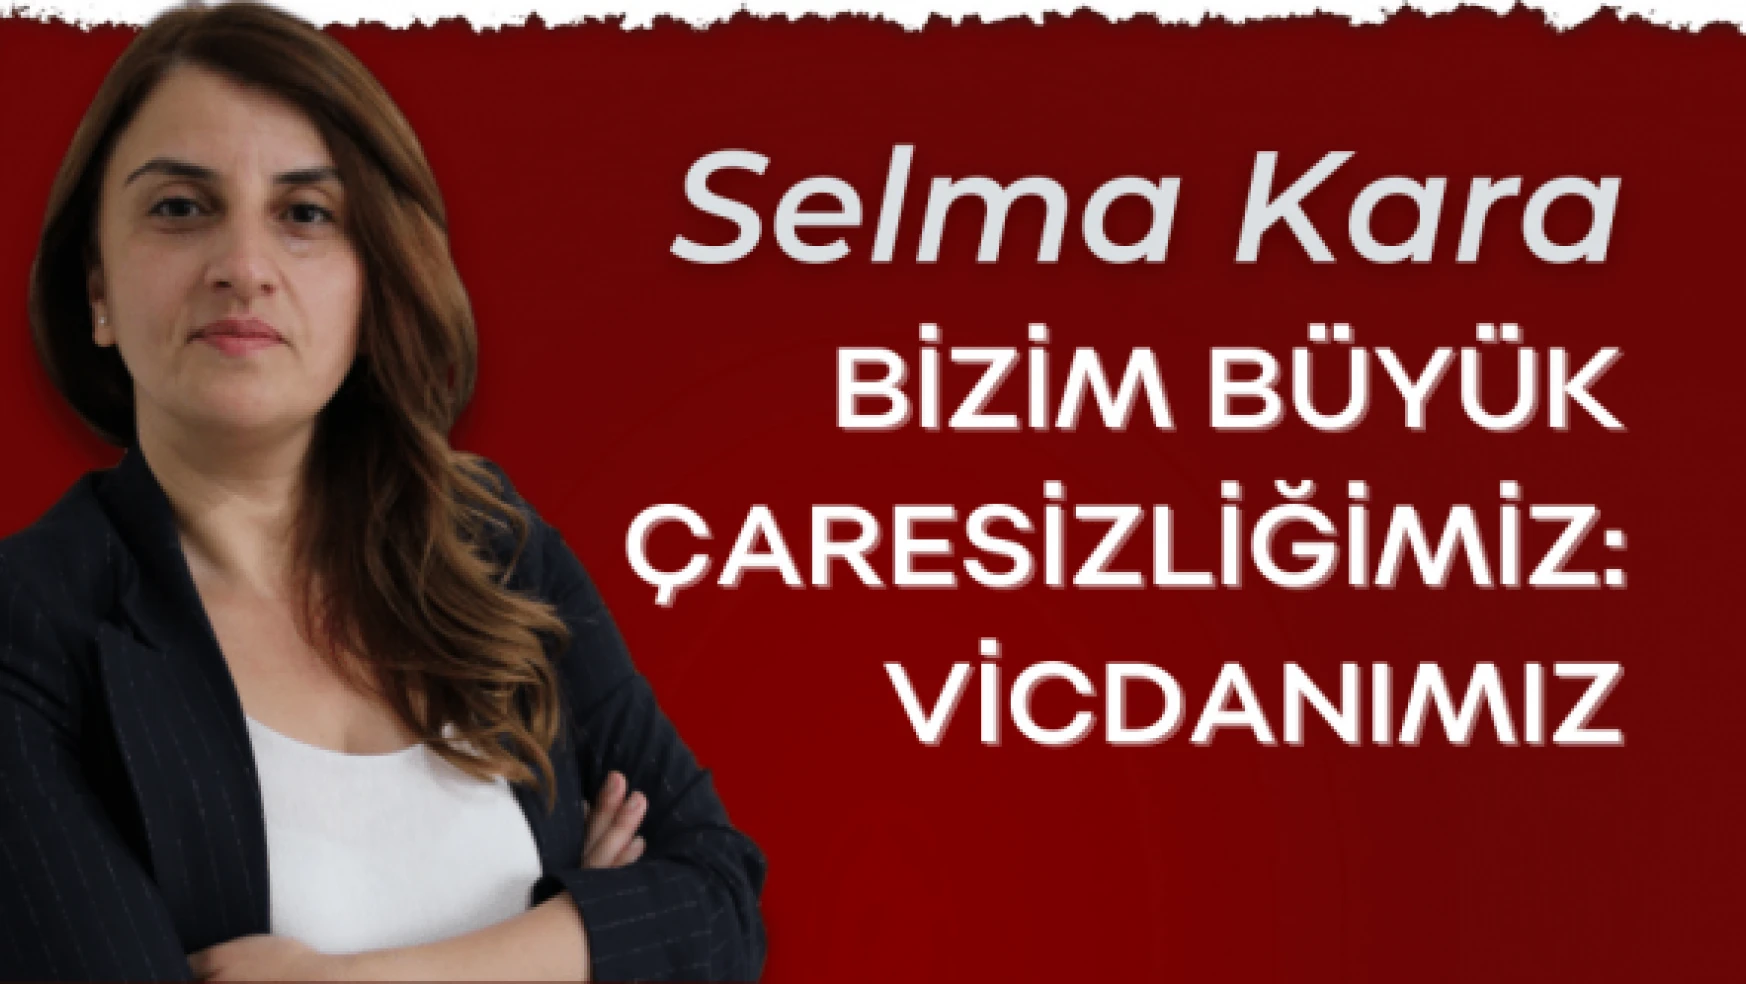 Gazeteci Selma Kara yazdı: &quotBizim büyük çaresizliğimiz vicdanımız"